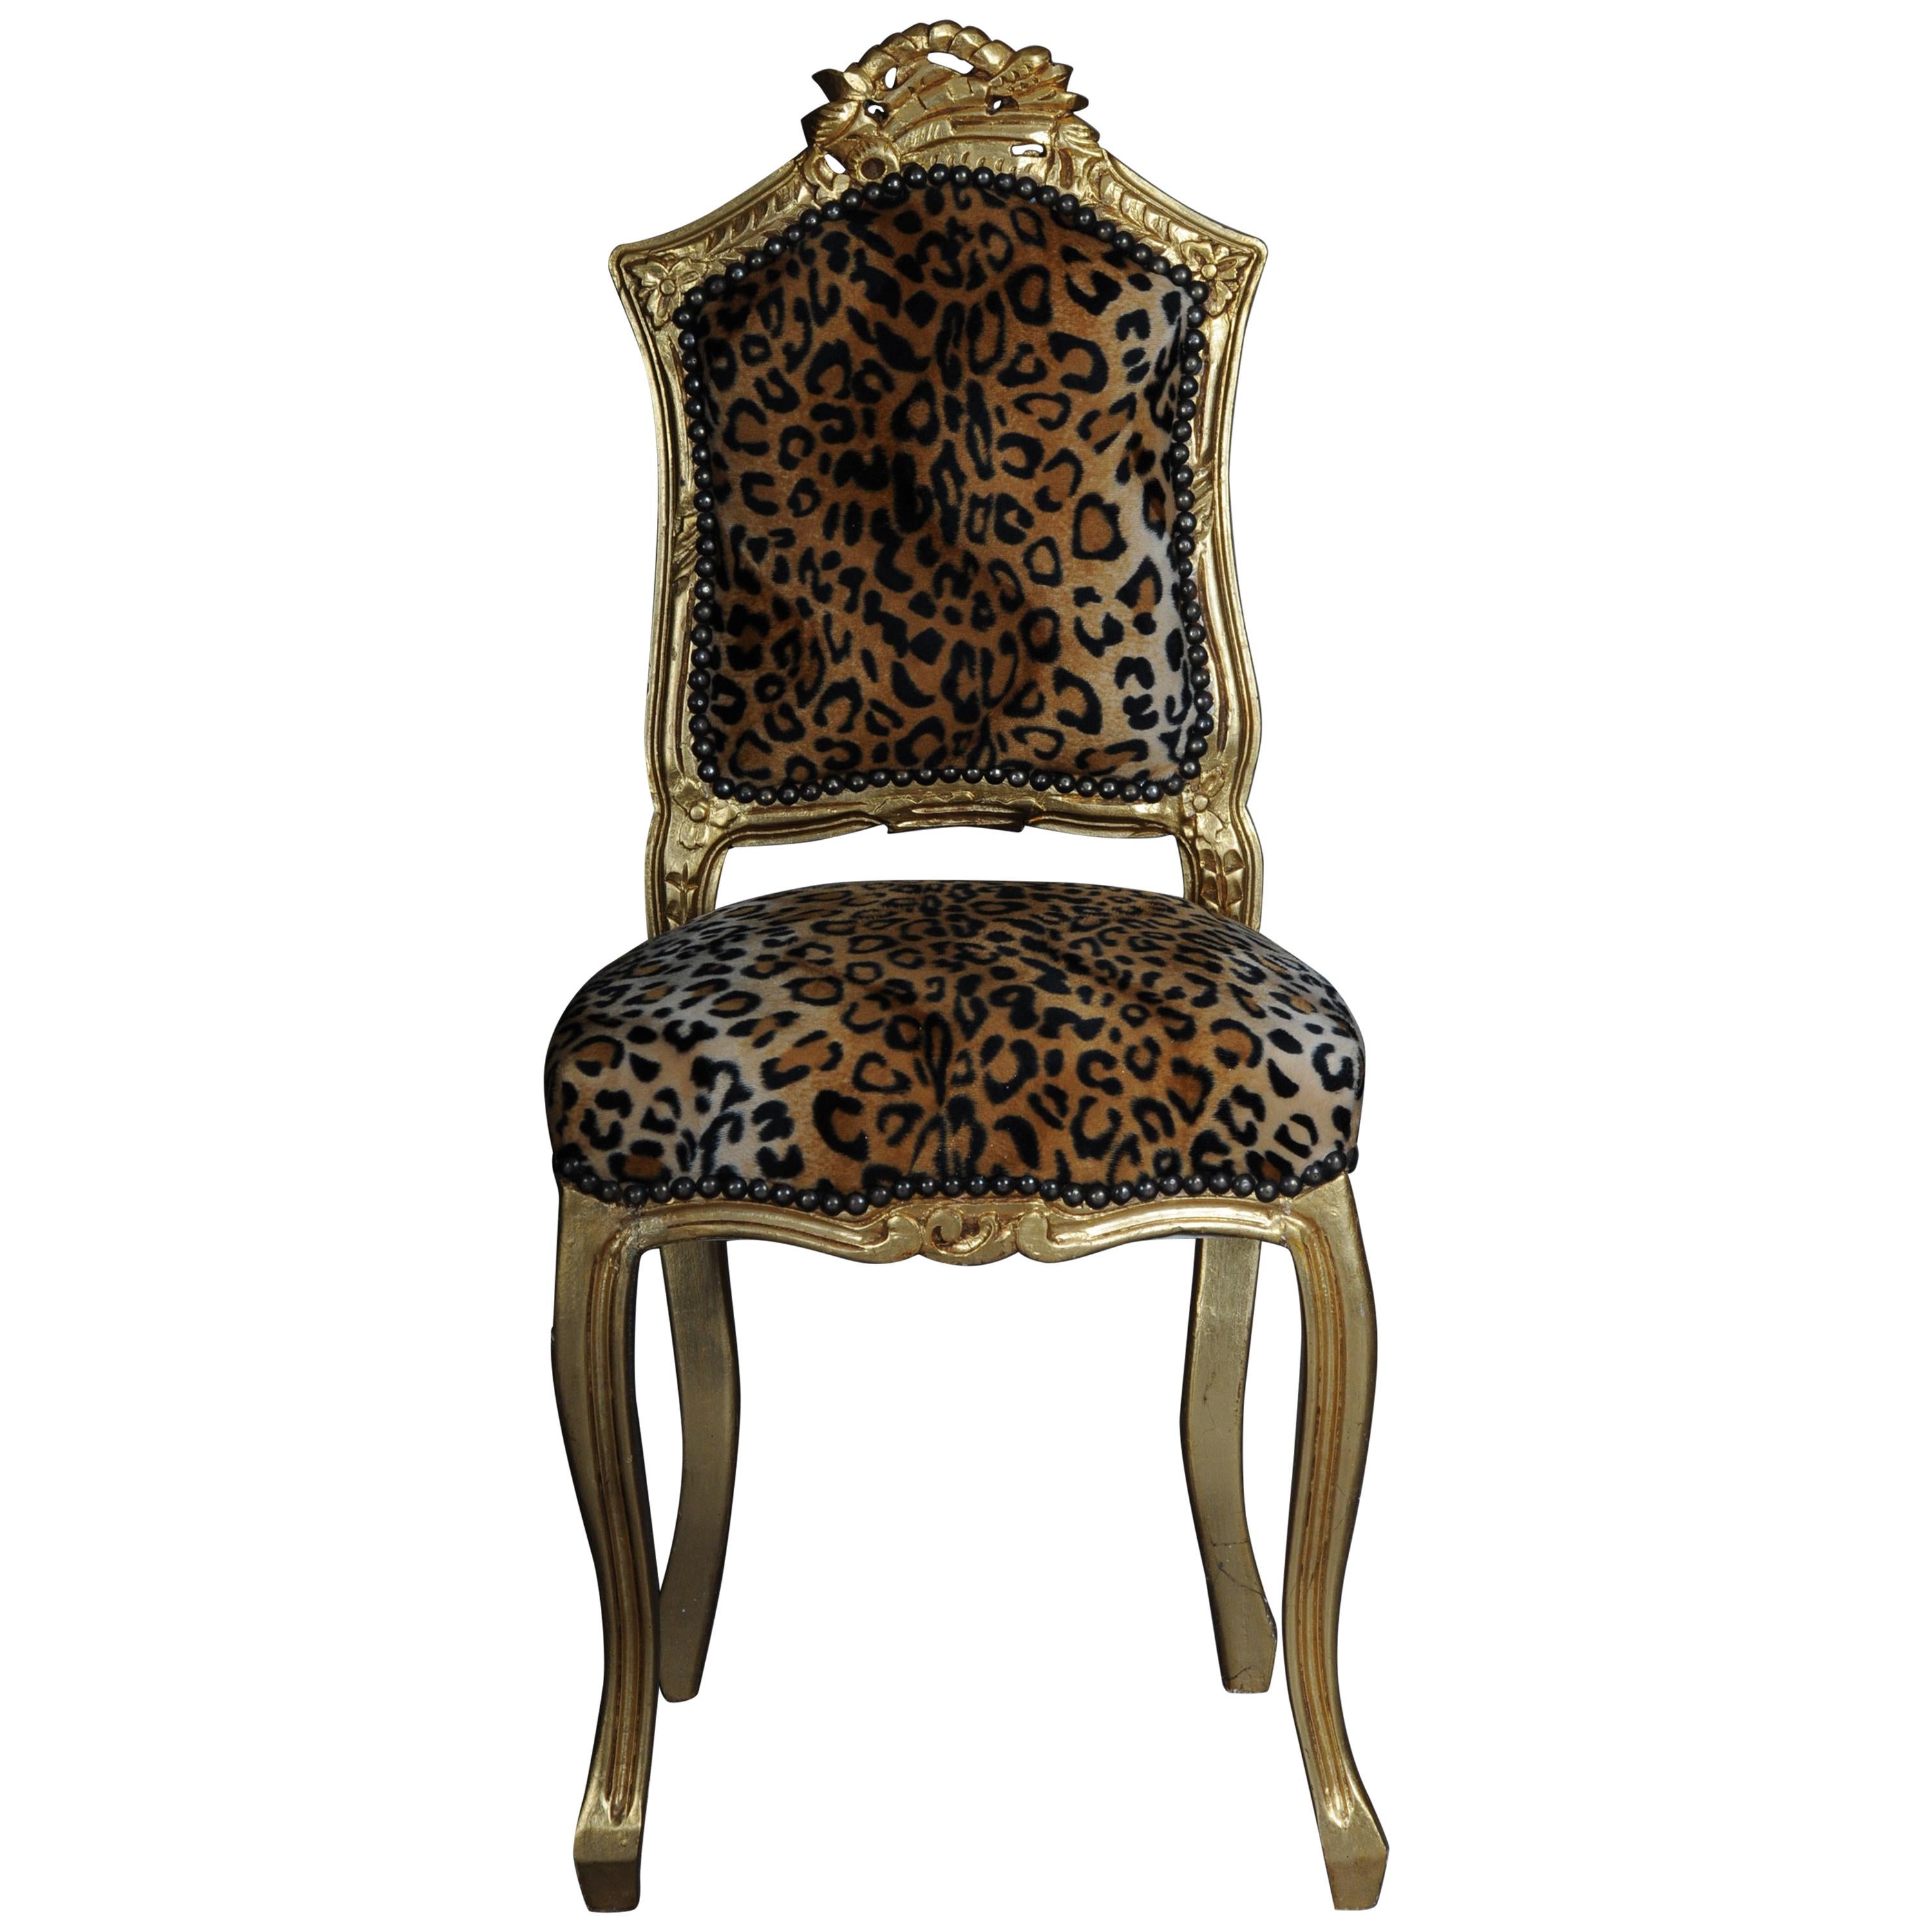 20th Century Fancy Chair in Louis XV Style, Velvet Leopard